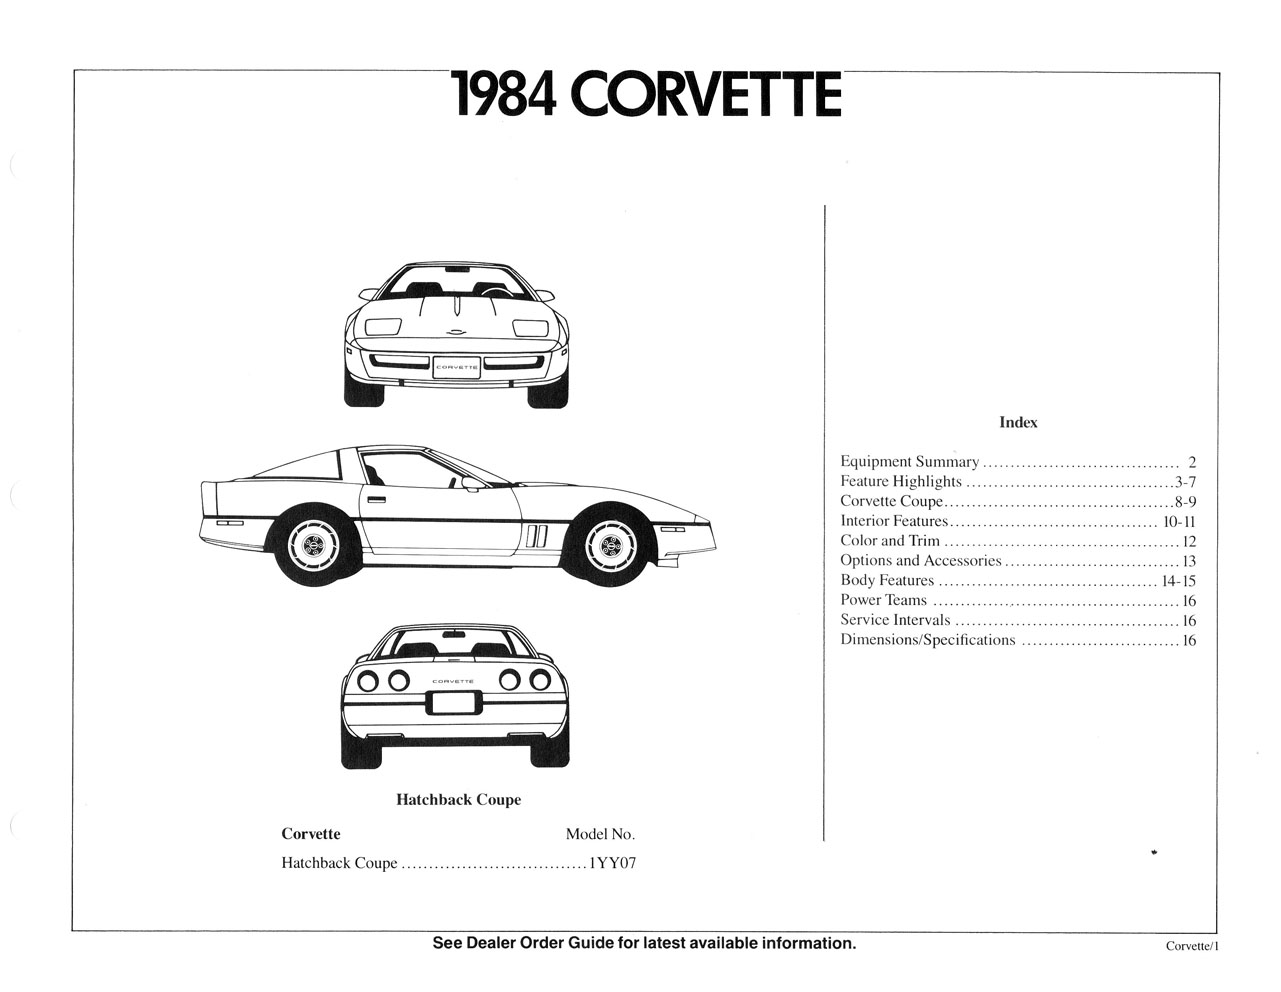 1984_Corvette_Dealer_Sales_Album-01b